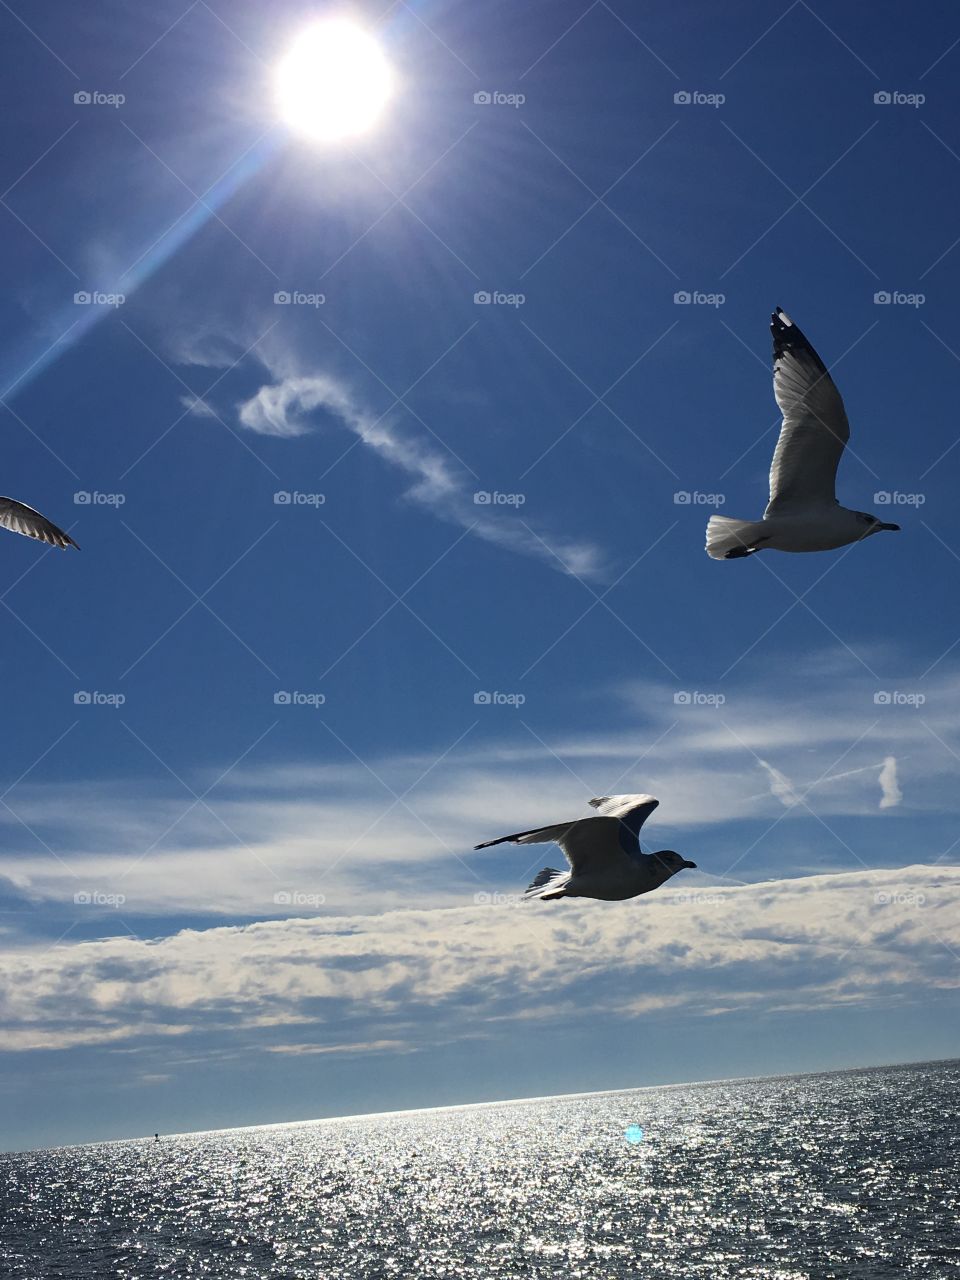 Birds taking flight